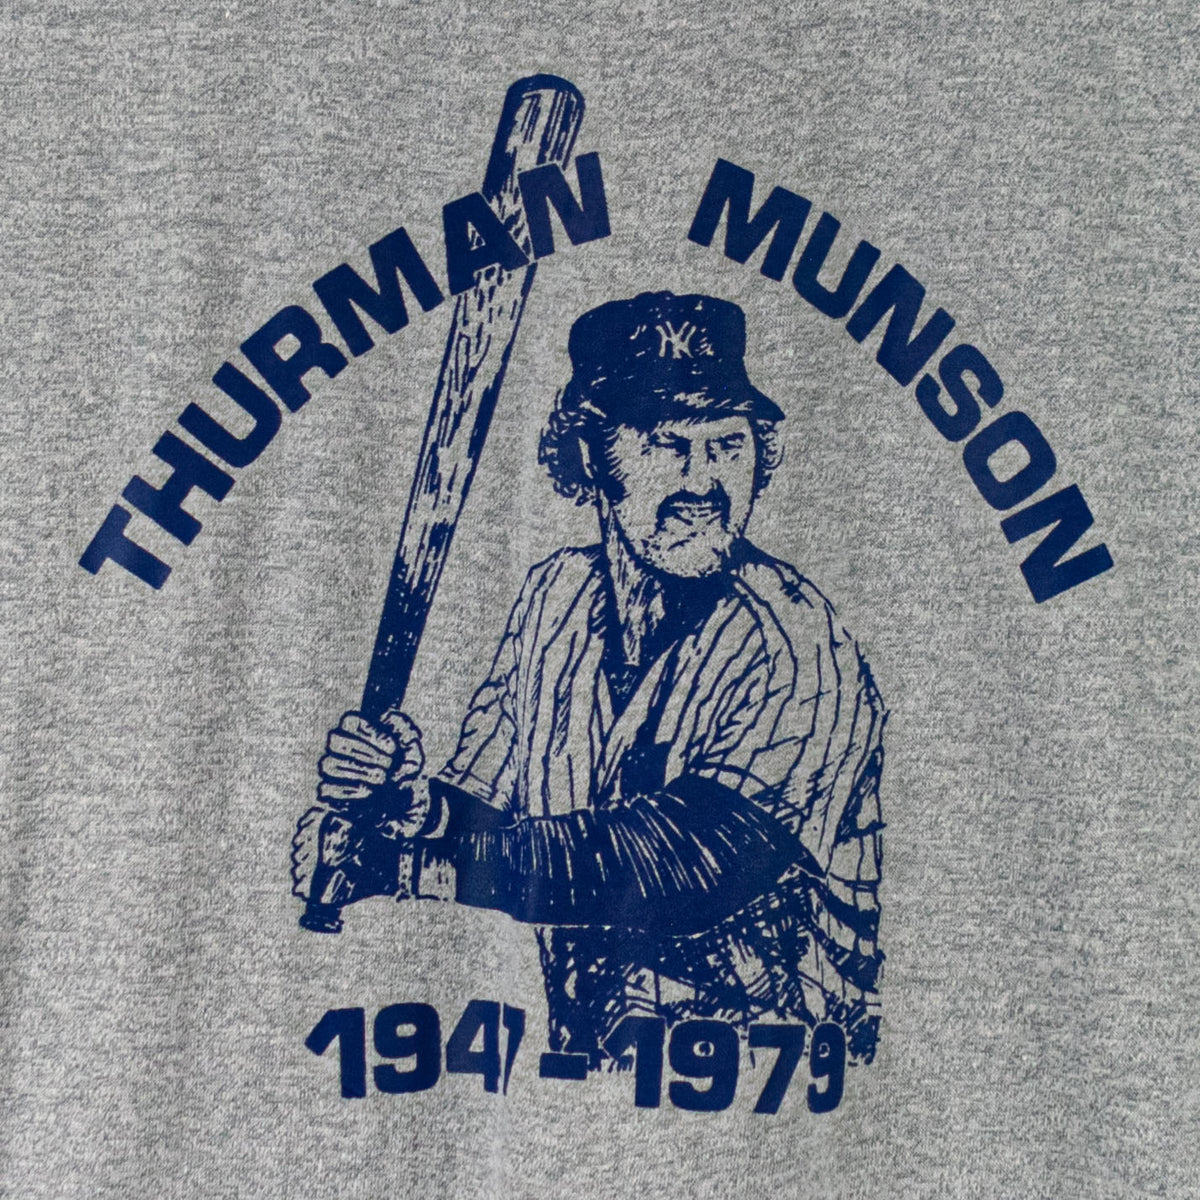 thurman munson shirt